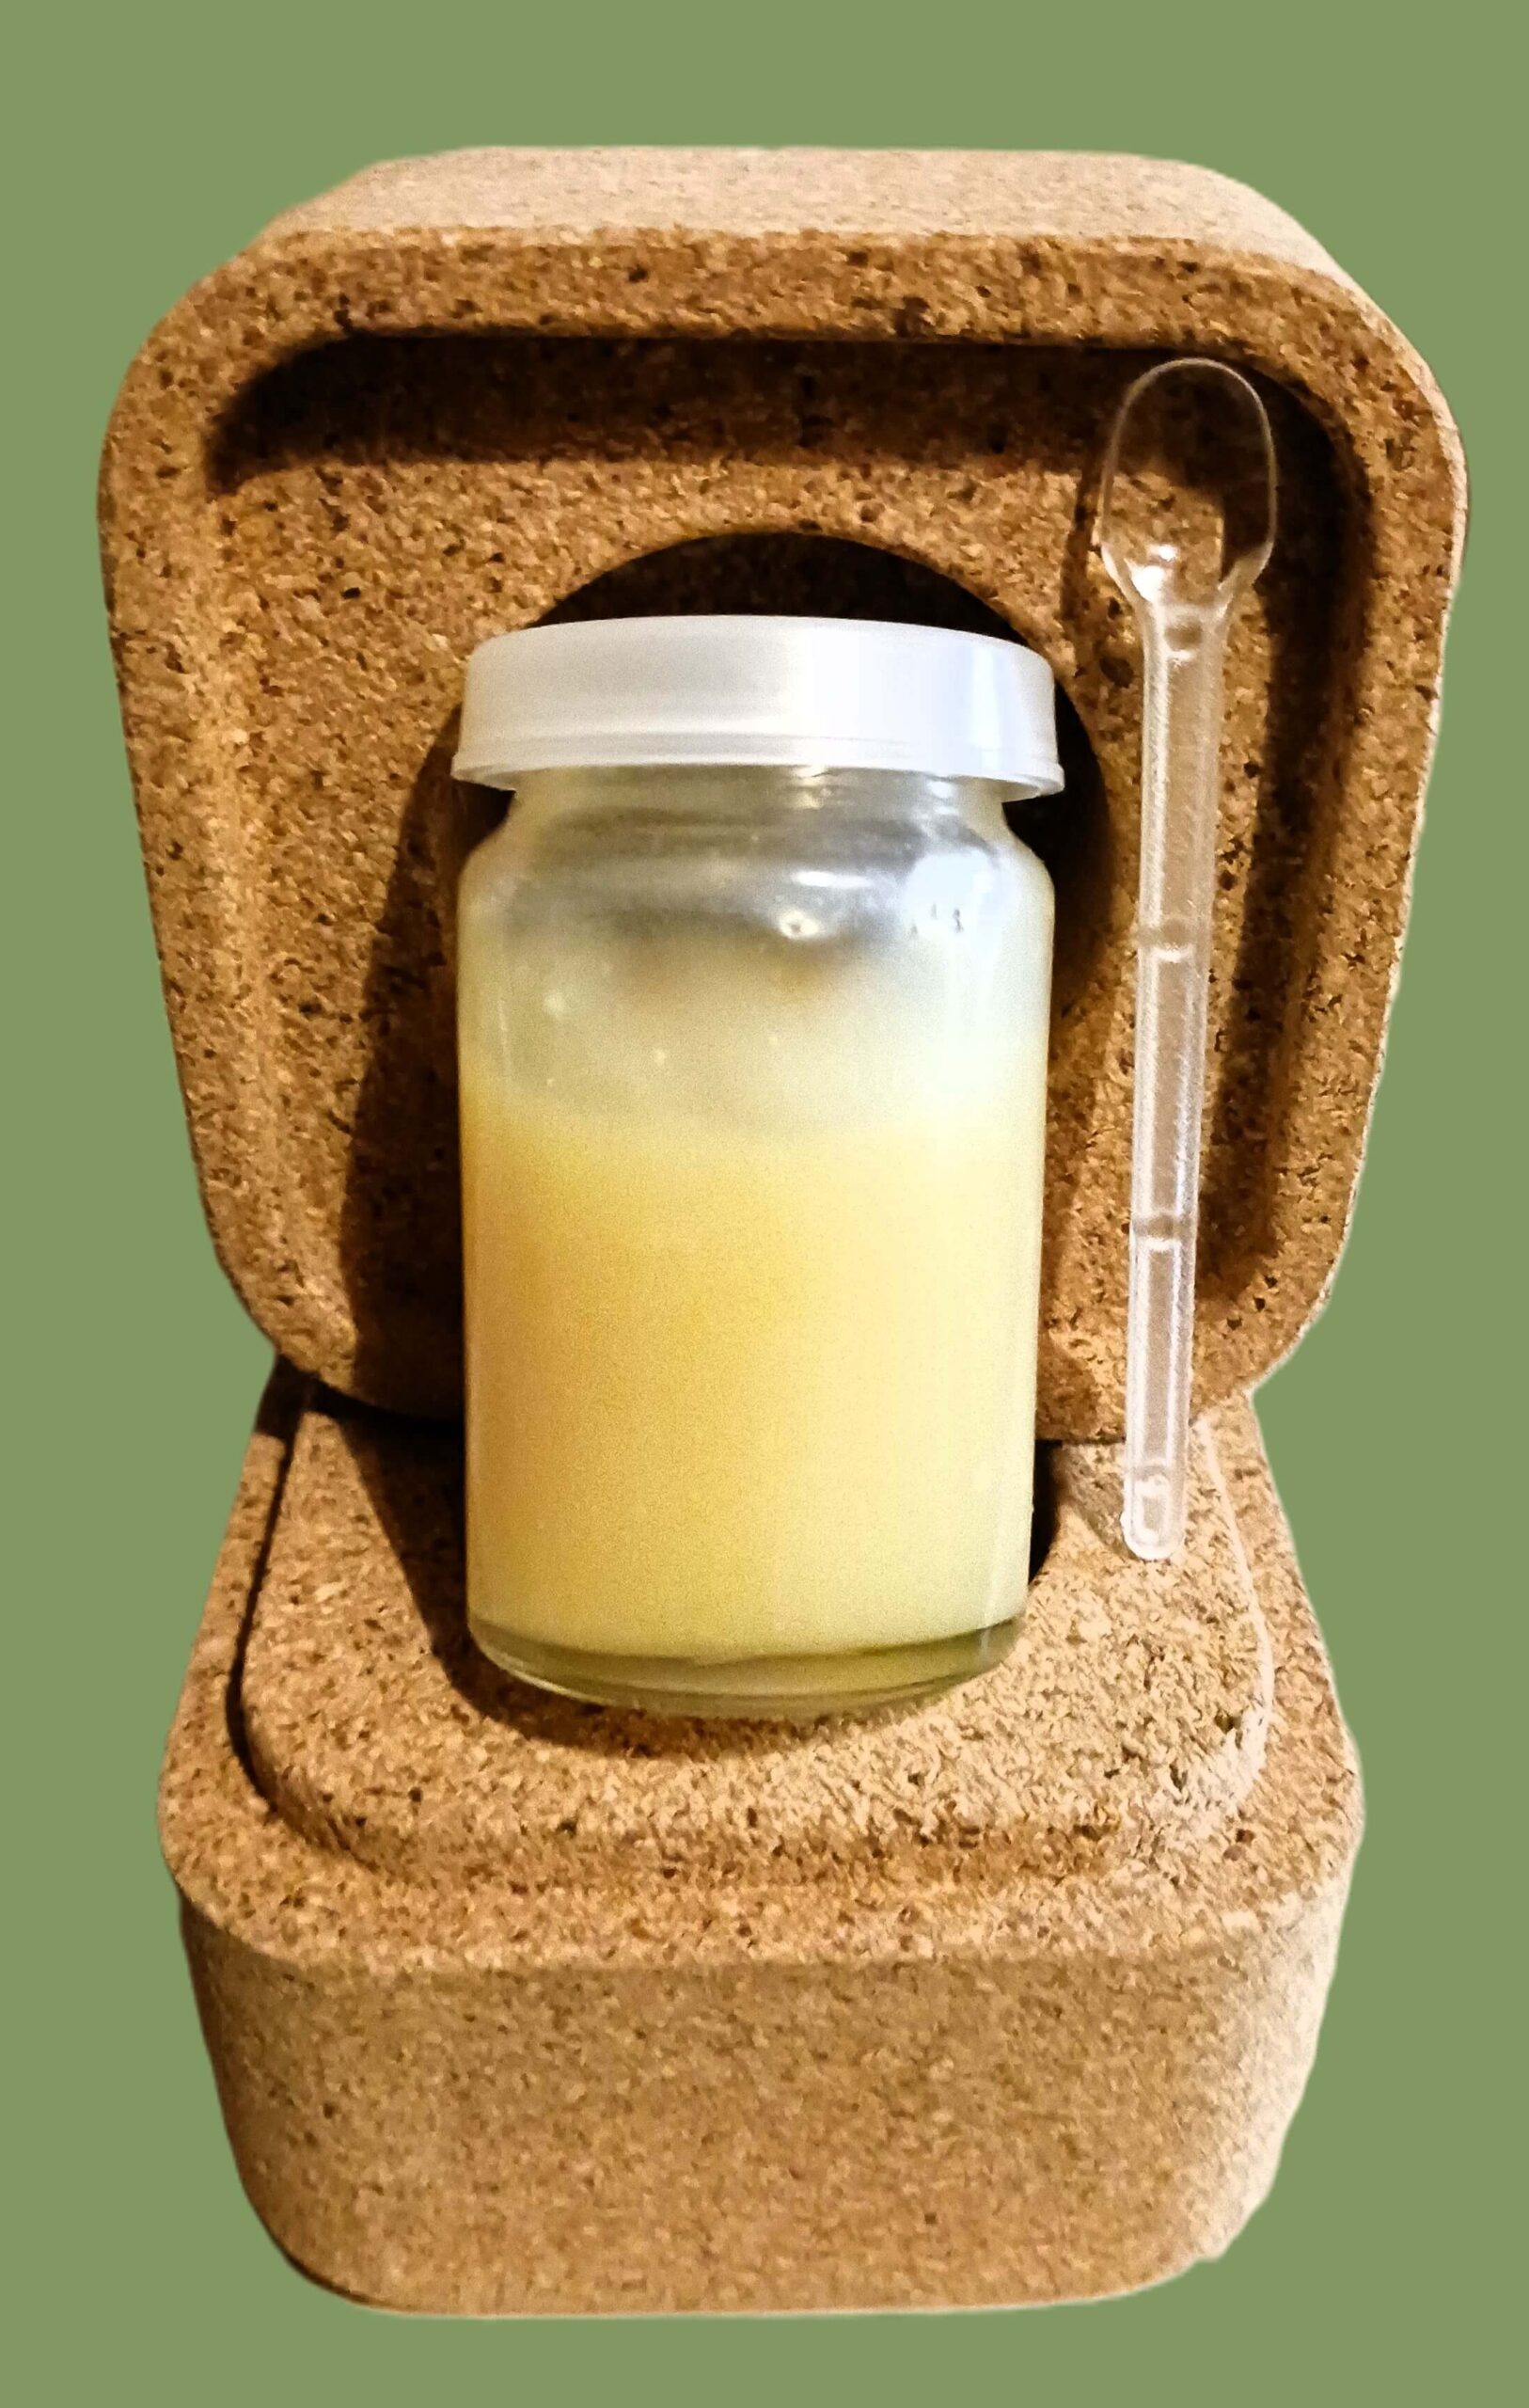 La gelée douce est un mélange de 10 grammes de gelée royale avec 10 grammes de miel de montagne